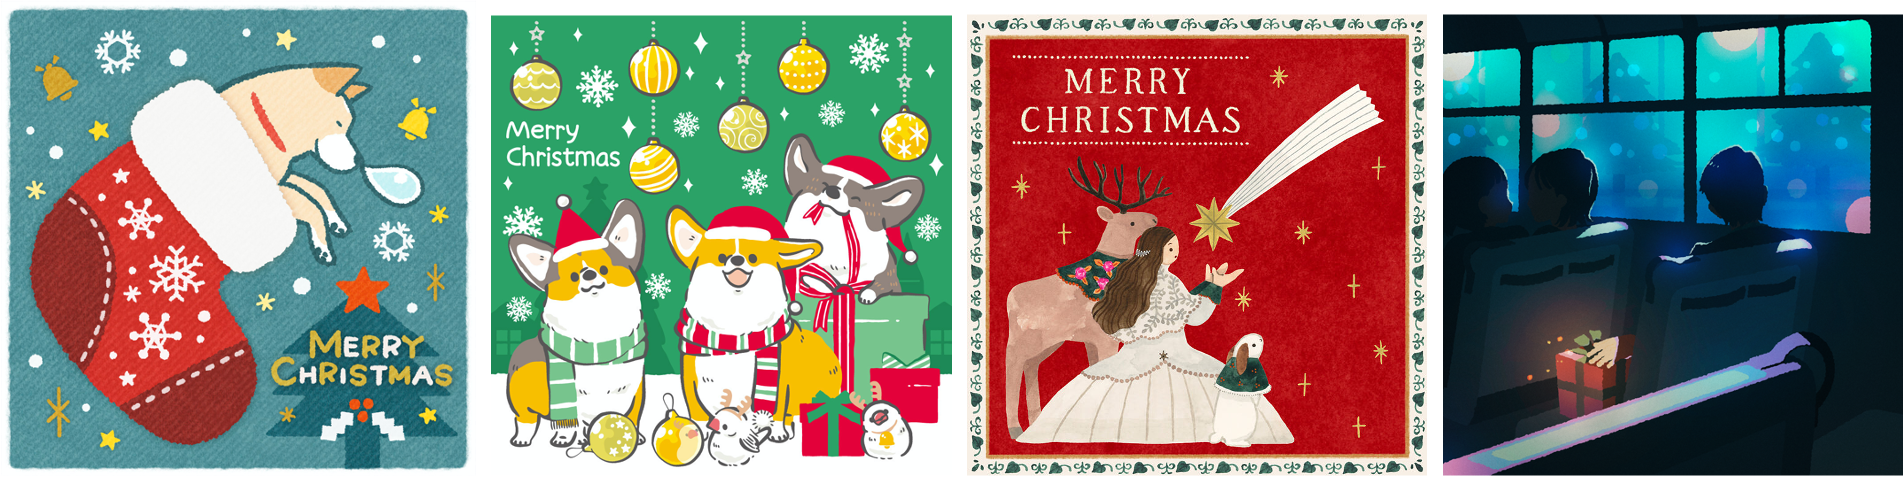 大切な人に想いを込めて Giftee で贈るクリスマスのeギフト 3種類のクリスマスキャンペーンを12月24日 木 まで実施中 クリスマス におすすめのeギフトをご紹介 クリスマス限定のギフトカードの提供も開始 株式会社ギフティ